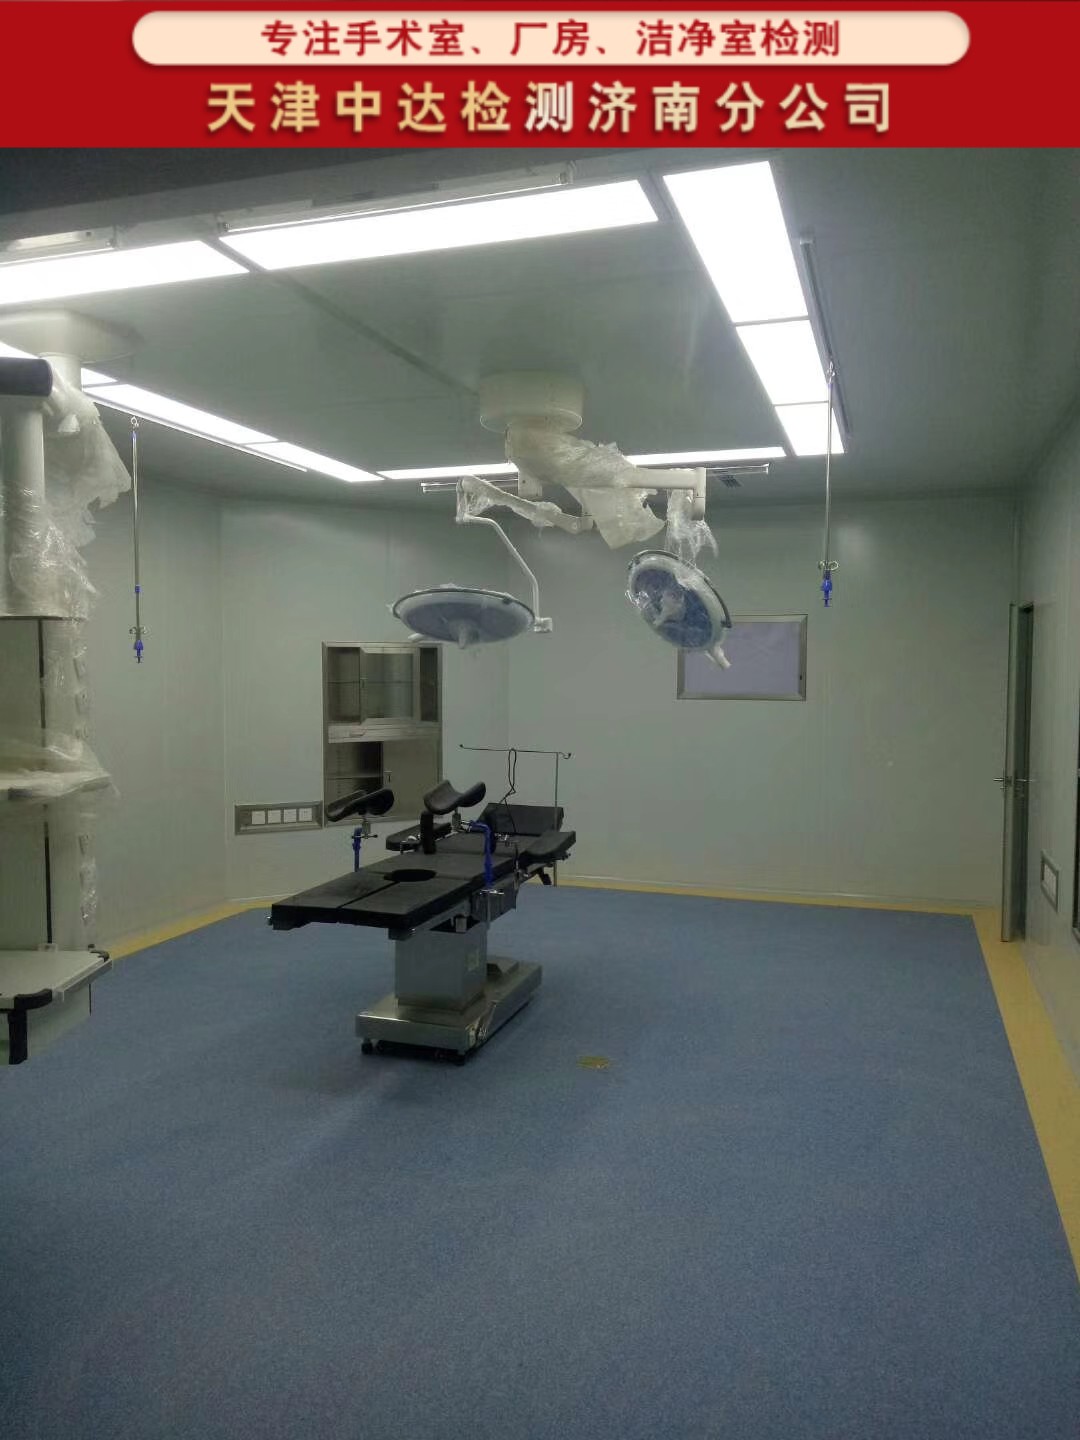 青岛崂山区医院手术室净化检测第三方-天津中达检测济南分公司